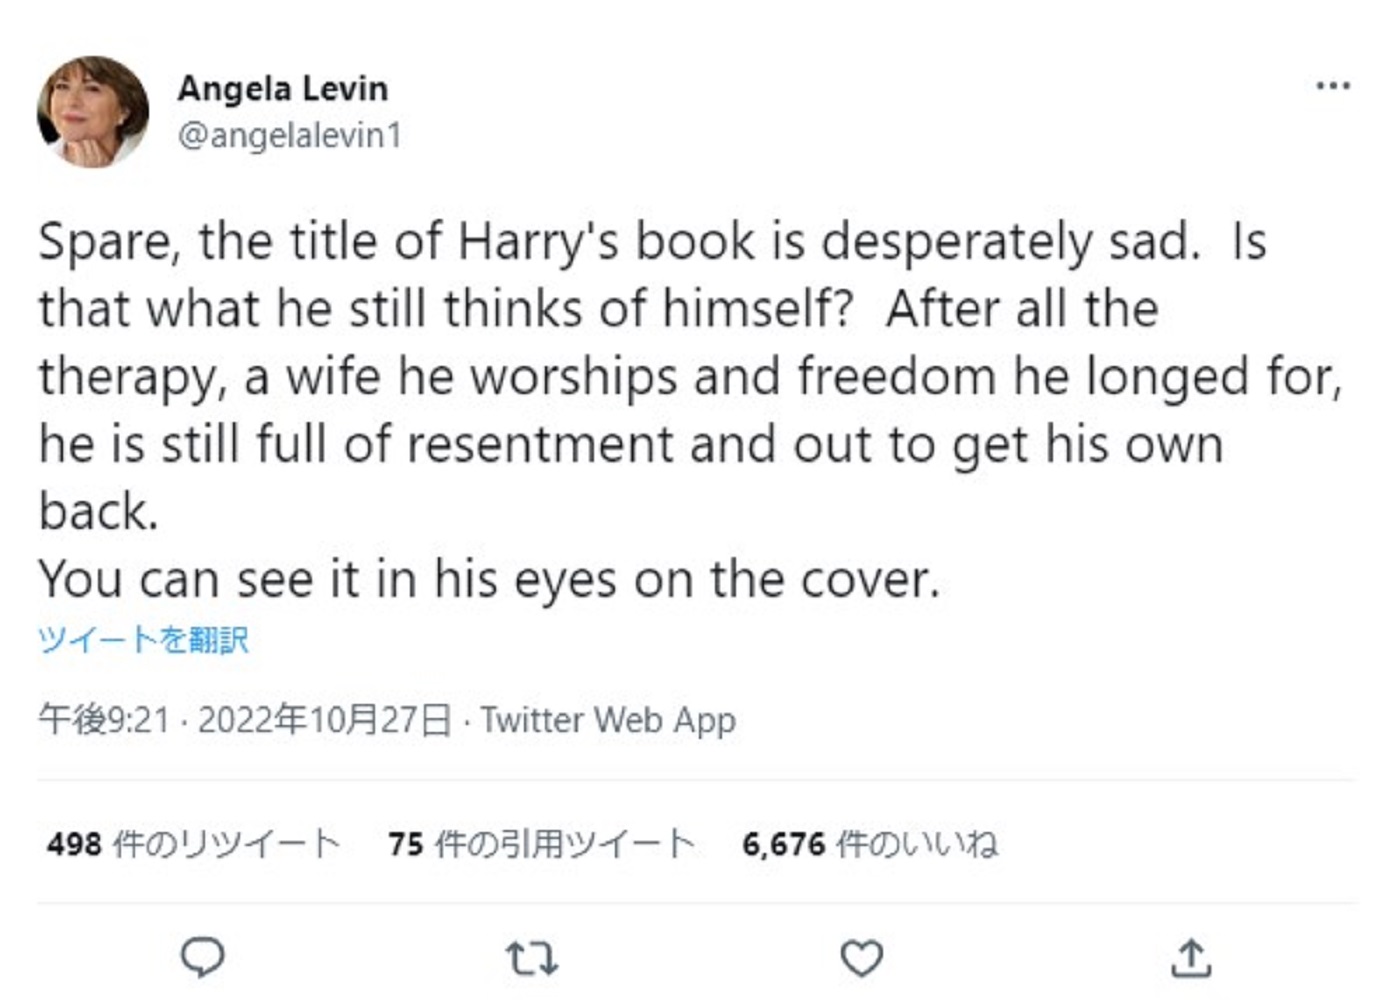 『SPARE（予備・スペア）』に隠された意味を指摘したアンジェラ・レビン氏（画像は『Angela Levin　2022年10月27日付Twitter「Spare, the title of Harry's book is desperately sad.」』のスクリーンショット）